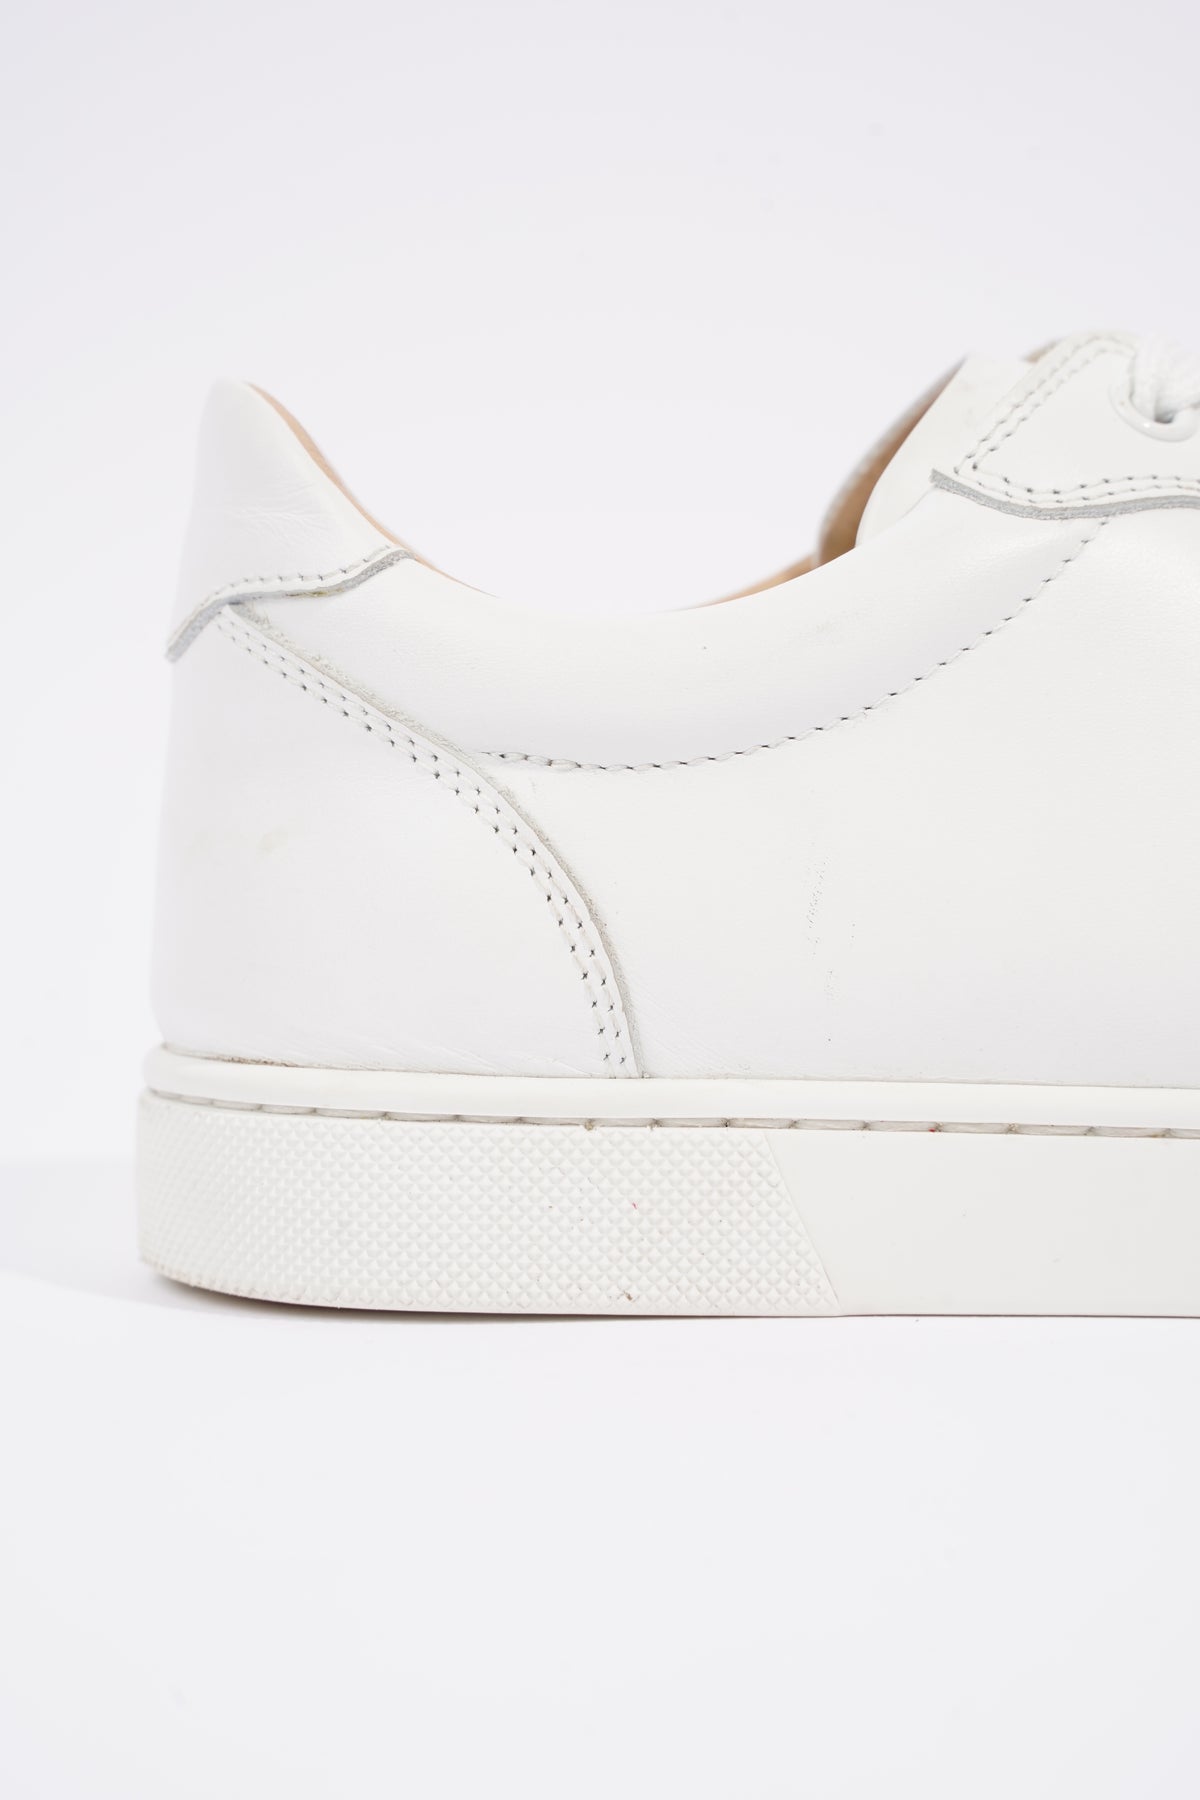 Christian Louboutin, Vieira white leather sneakers